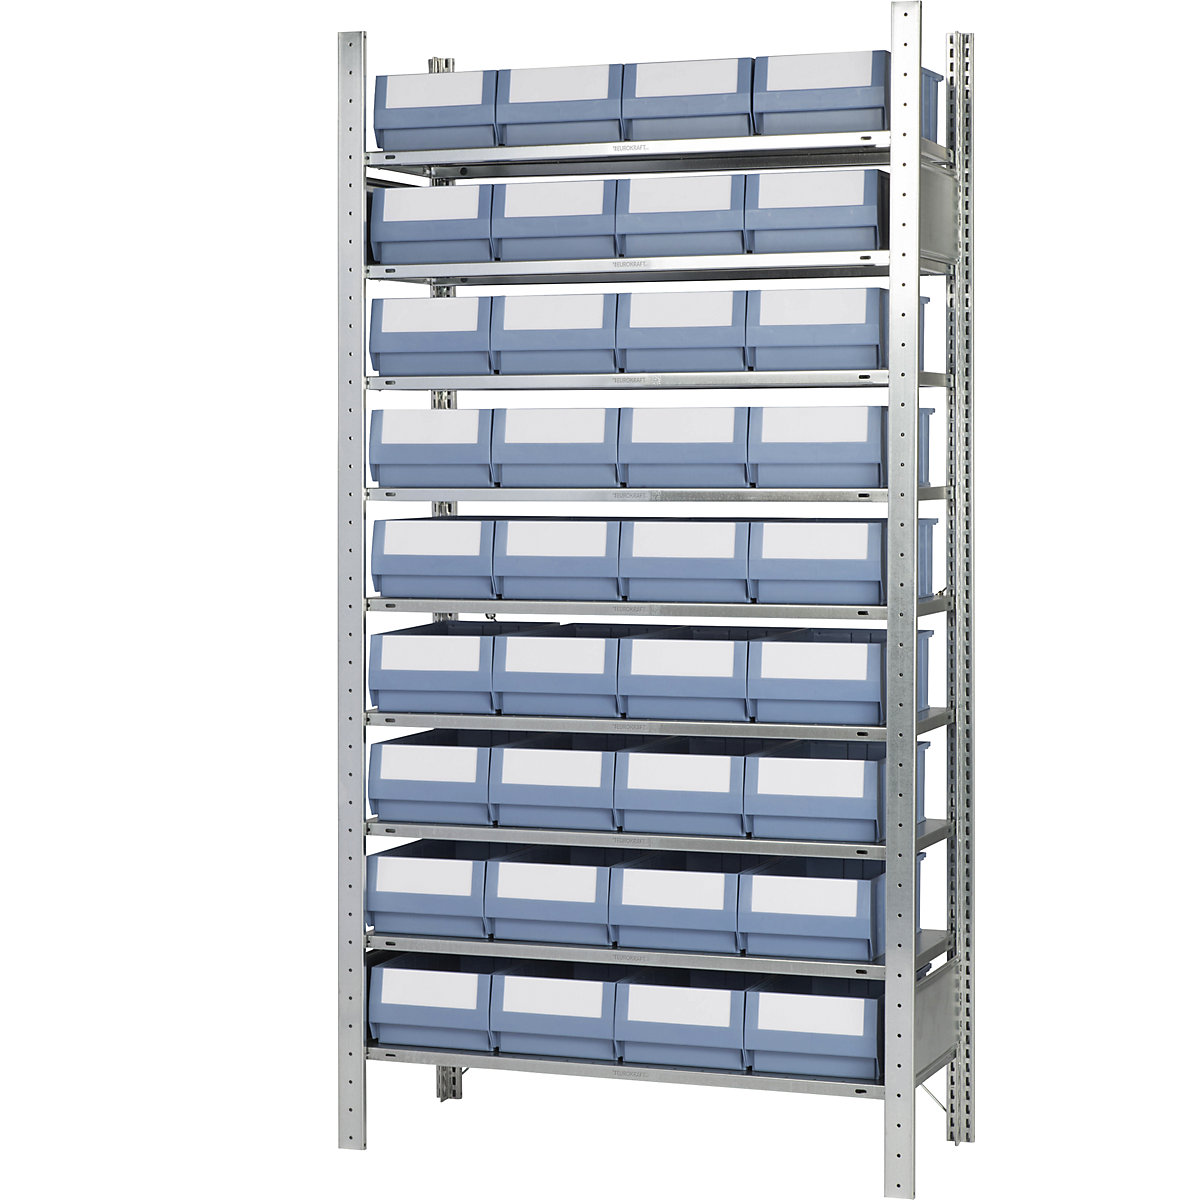 Estante de encaixar com caixas para estante – eurokraft pro, altura 2000 mm, 36 caixas, 9 prateleiras, profundidade 436 mm, estante base-4